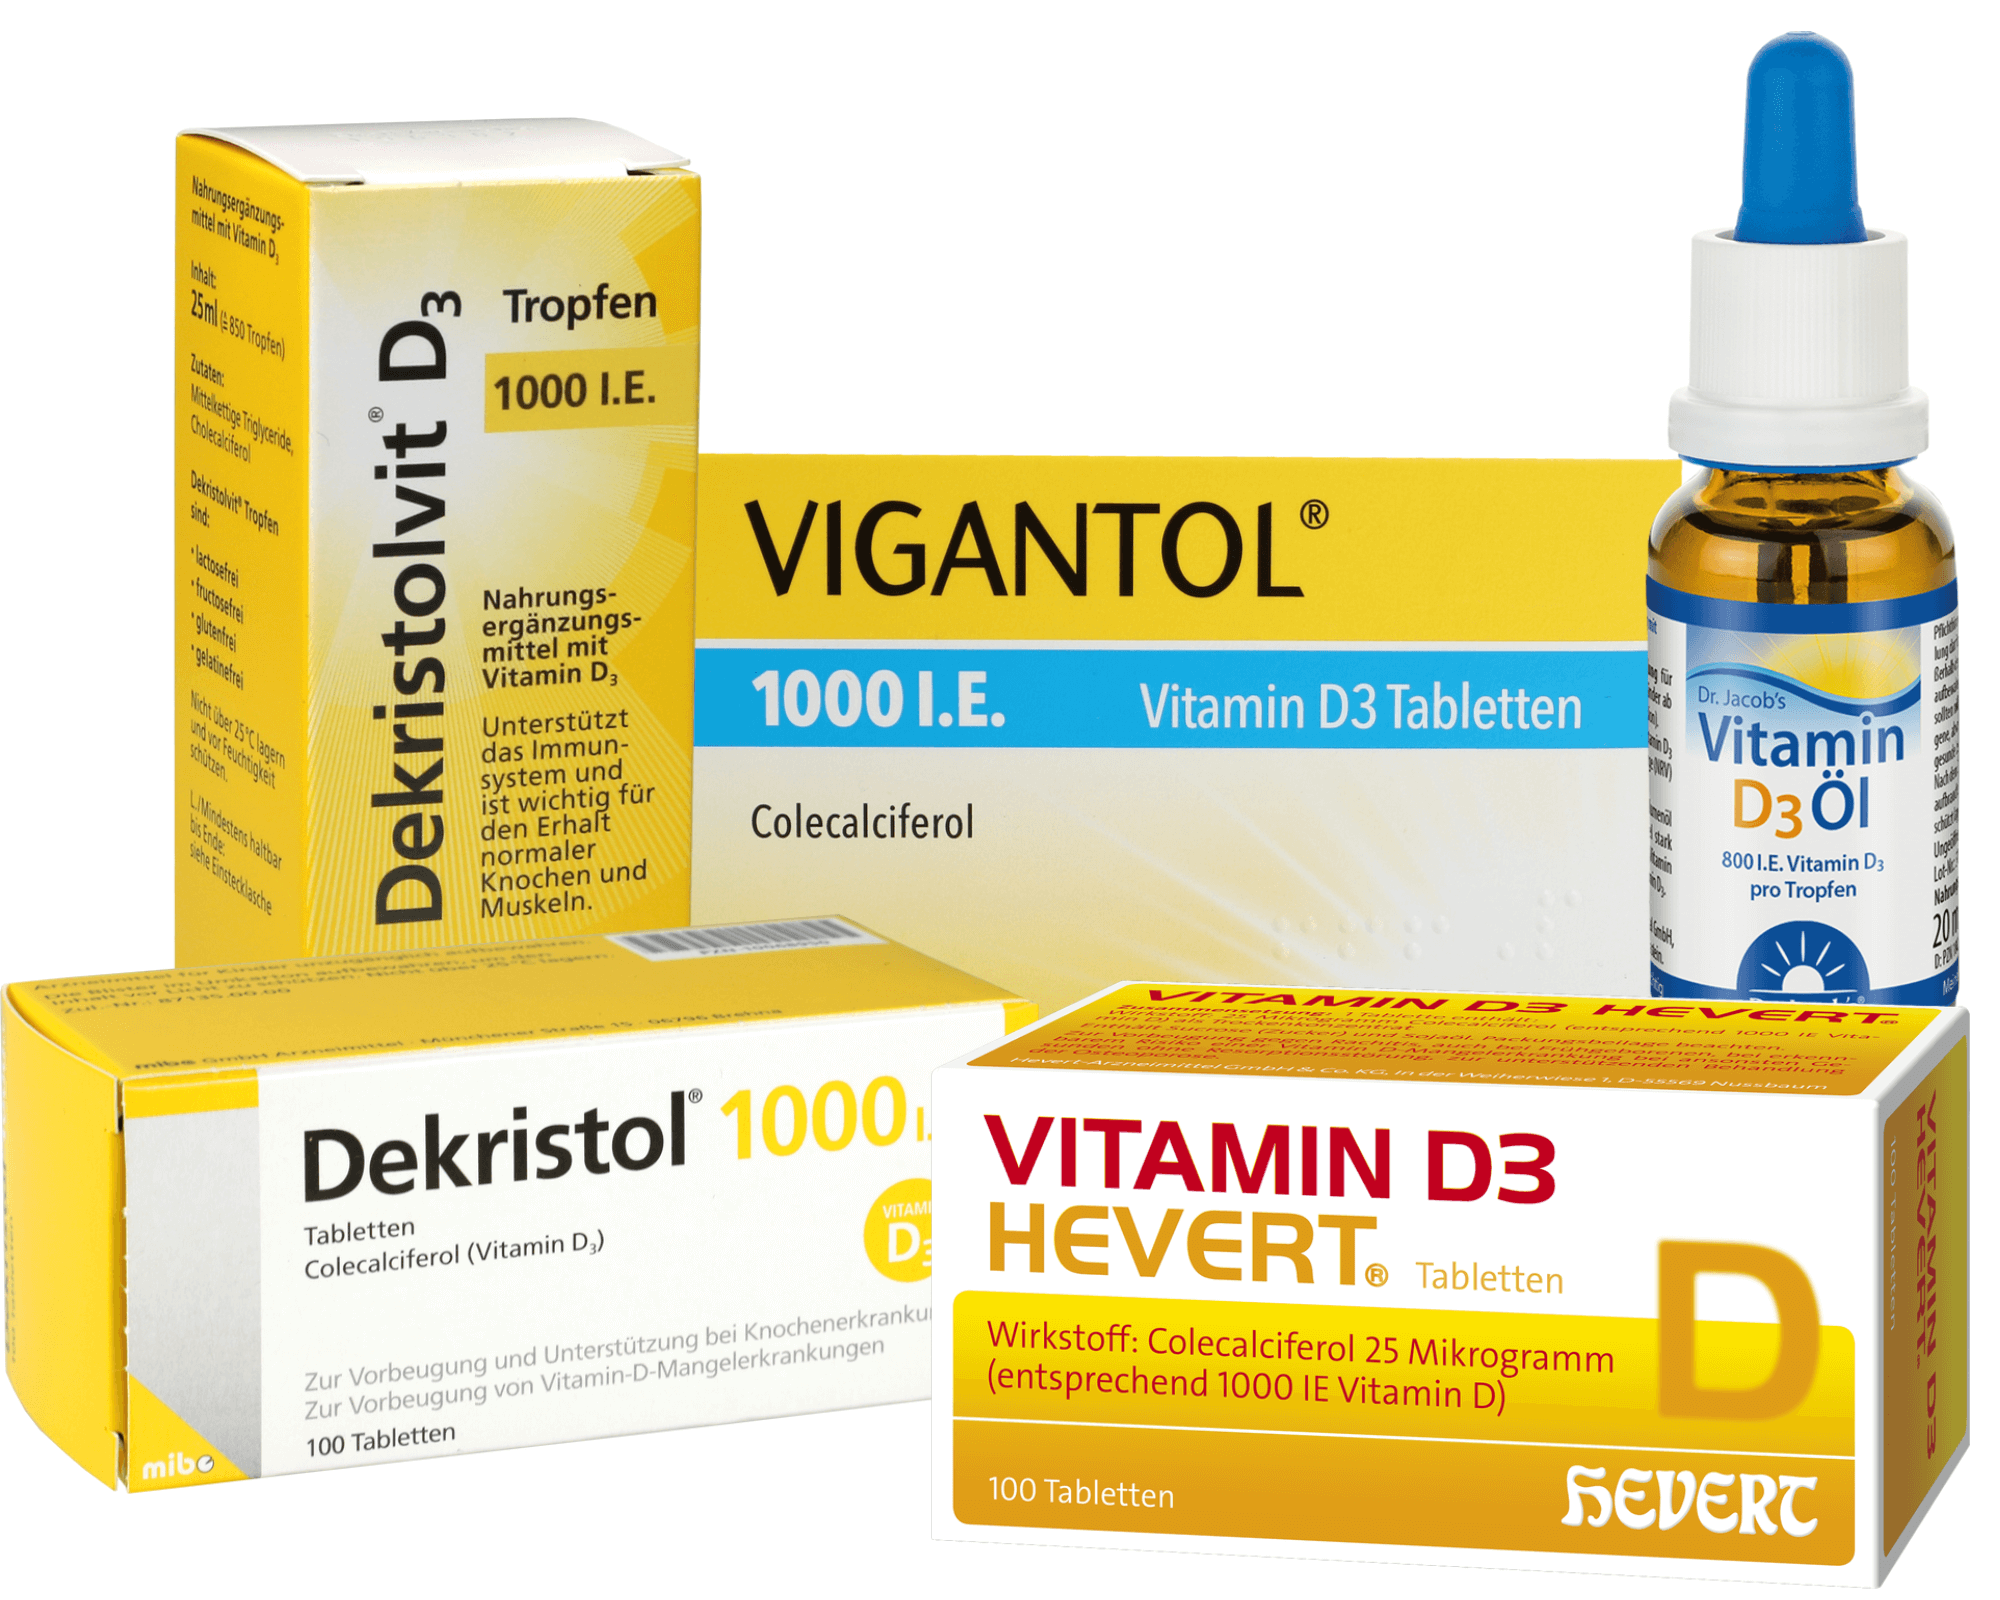 Top5 Mittel zur Vitamin D-Versorgung